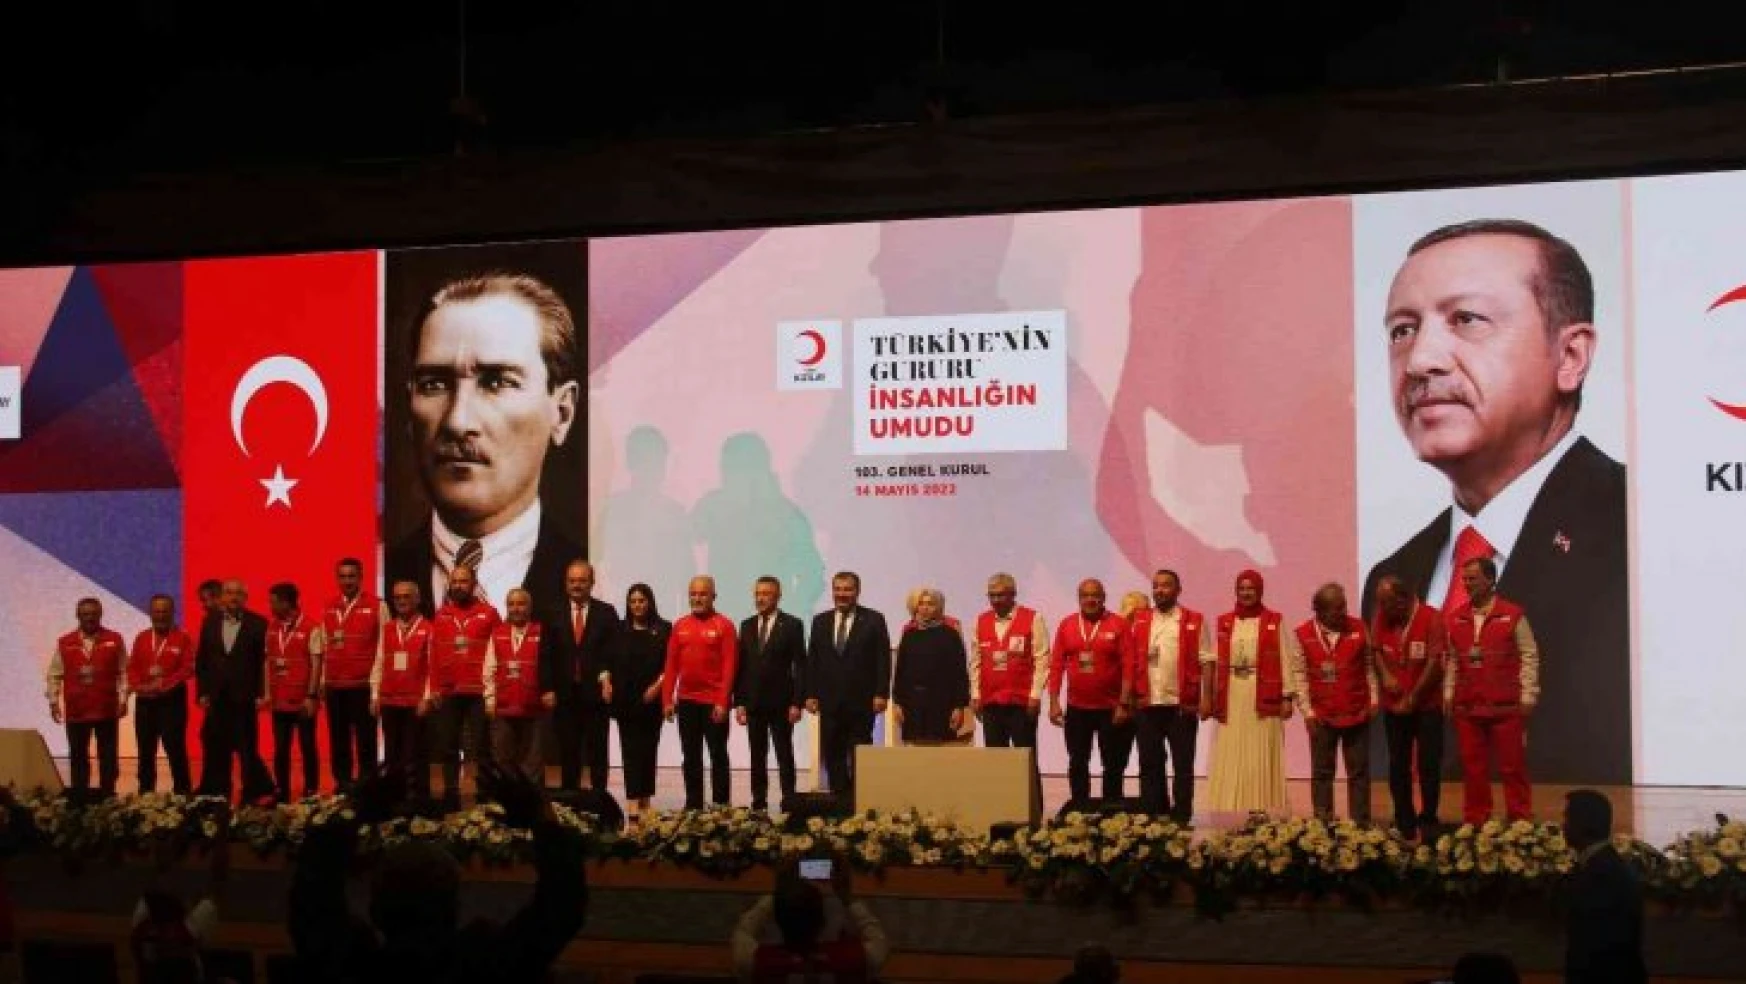 Kızılay Genel Başkanı Kınık: 'Küresel vicdanın sesi olmak için varız'